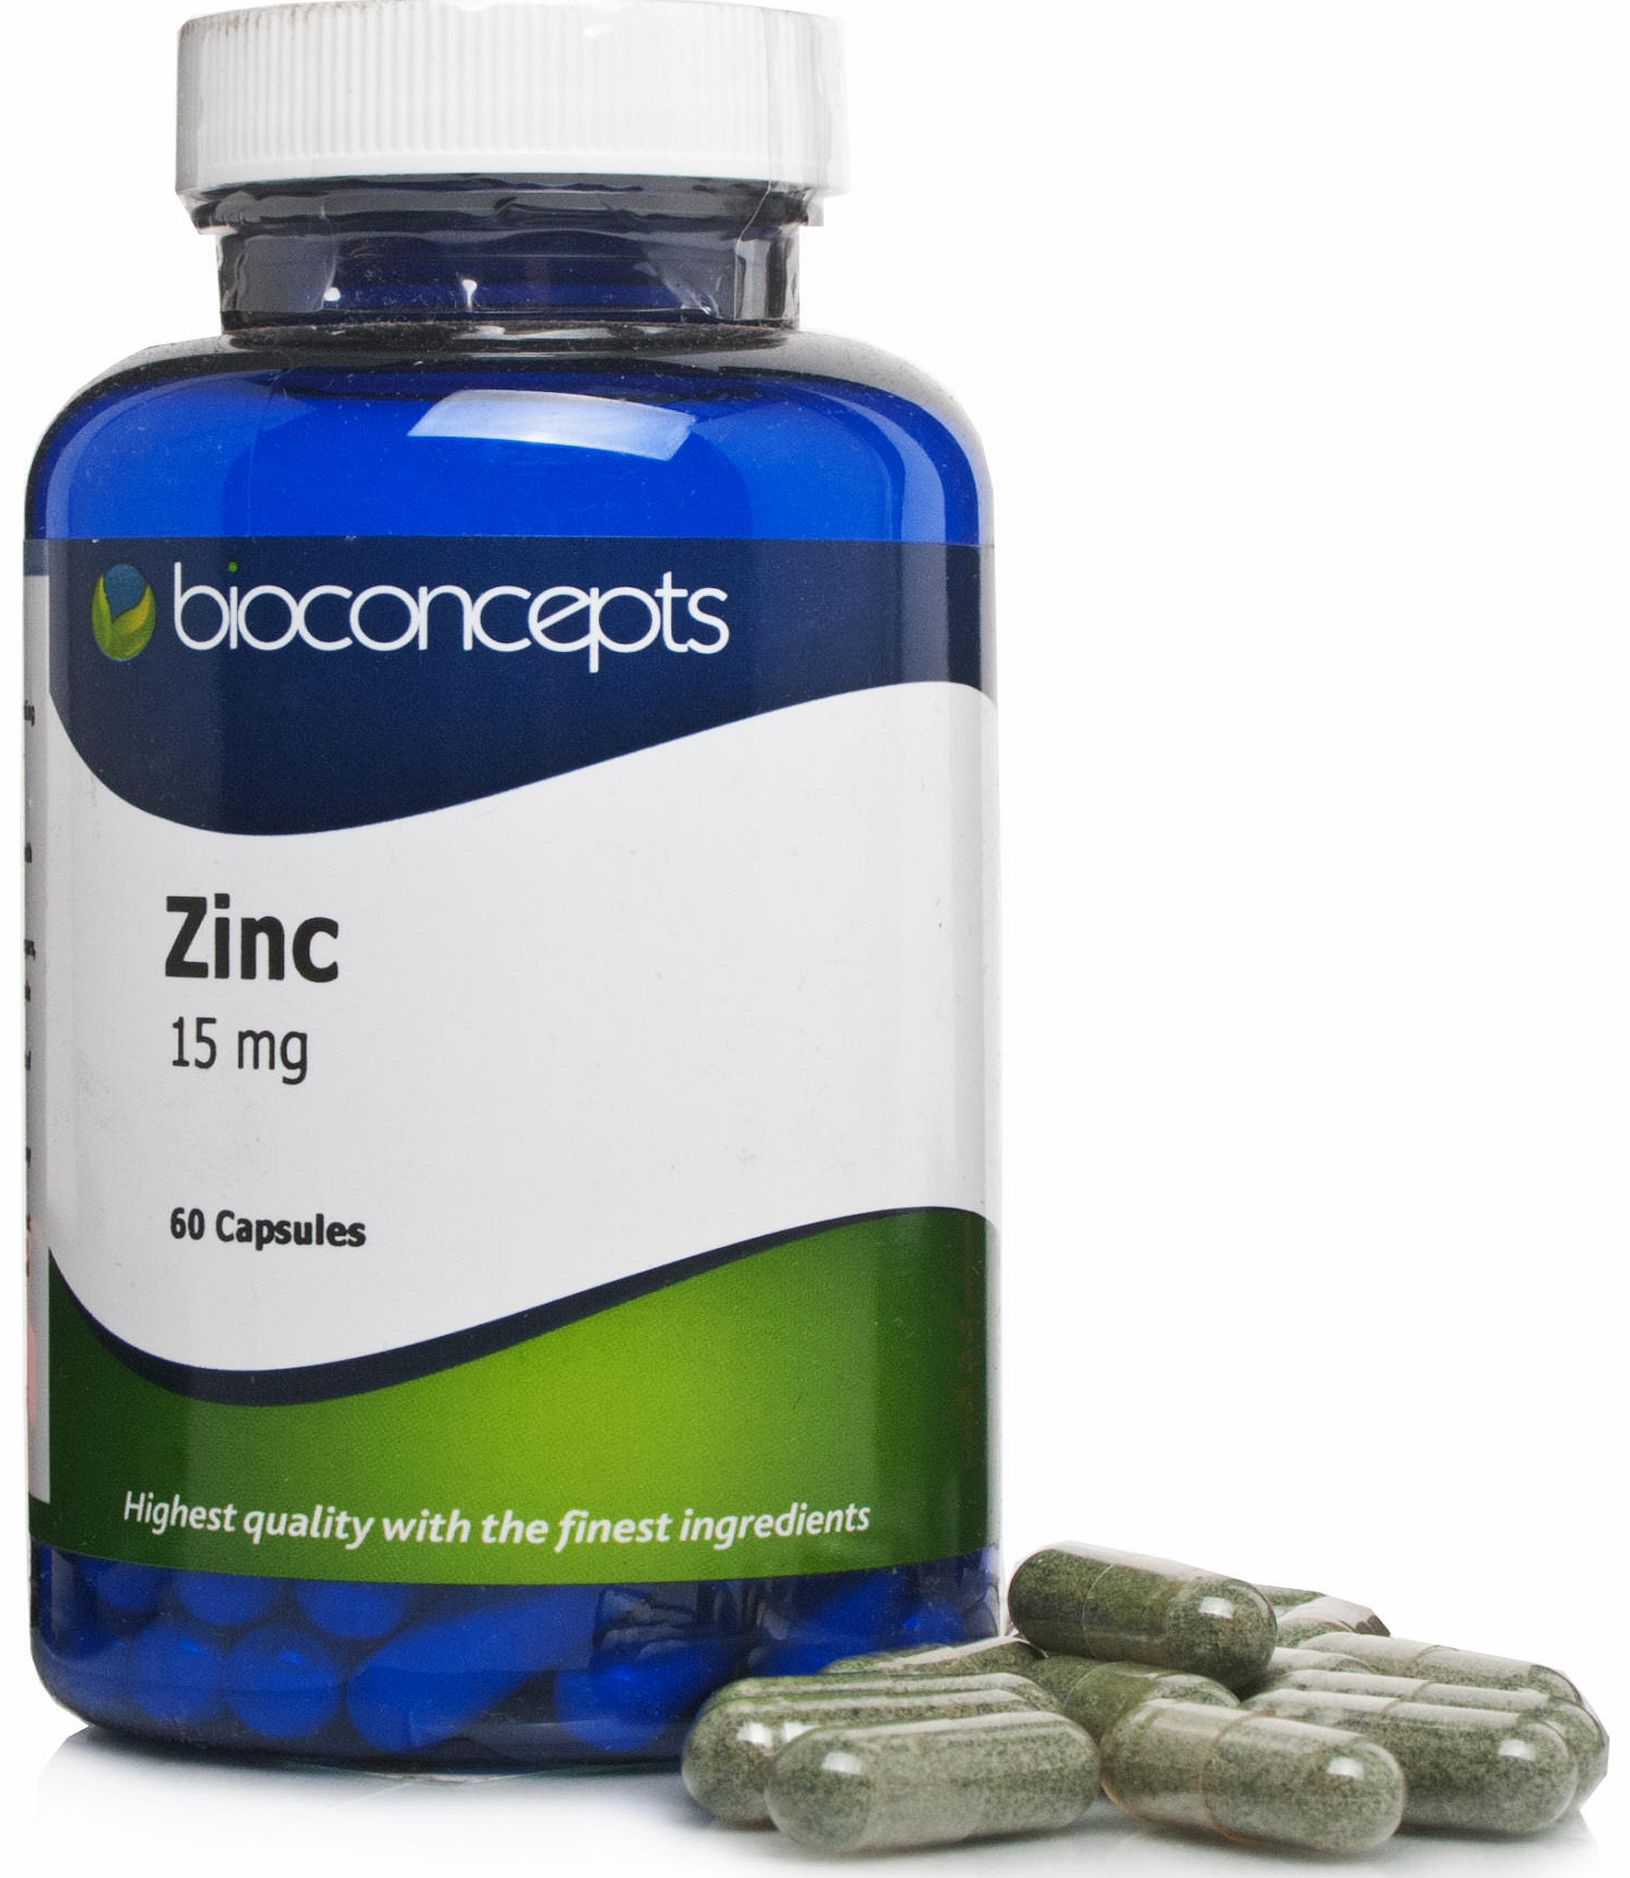 Bioconcepts Zinc 15mg Capsules